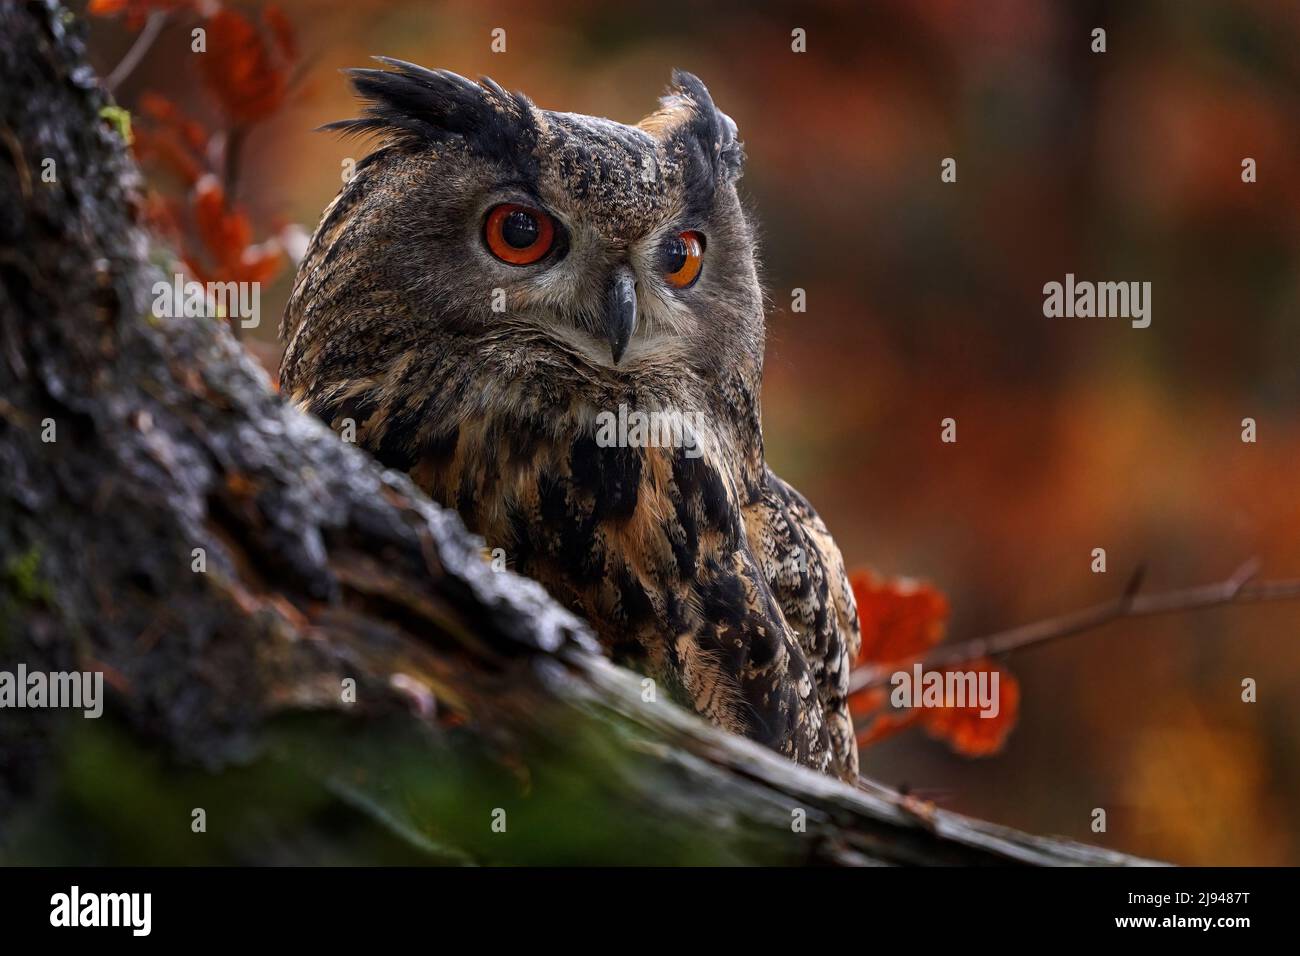 Tierwelt im Herbst. Eurasische Adlereule, Bubo Bubo, sitzend auf dem Baumstumpf, Wildtierfoto im Wald mit orangen Herbstfarben, Slowakei. Stockfoto